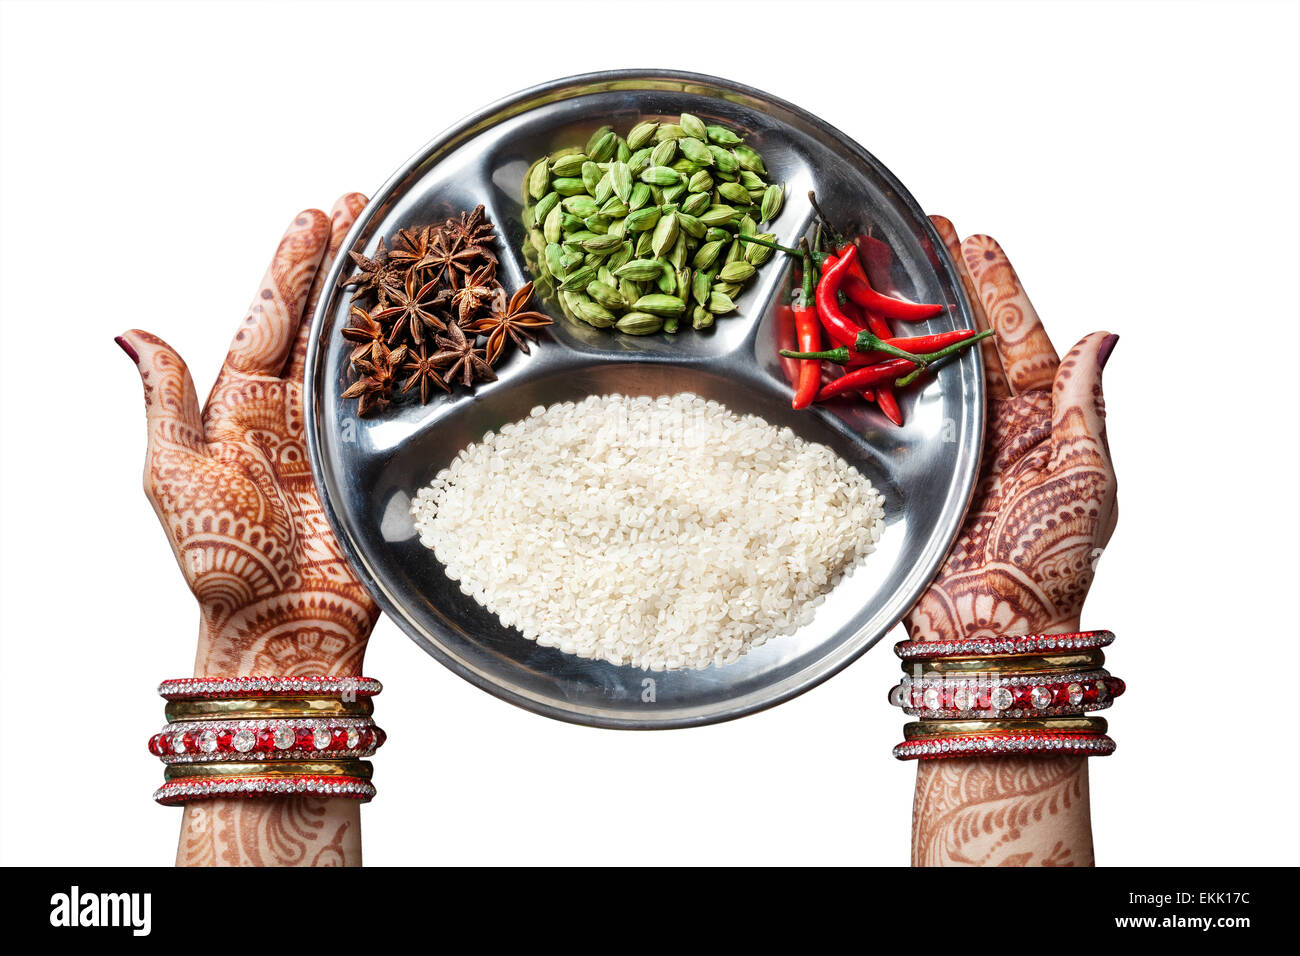 Les mains de henné femme maintenant la plaque avec du riz et des épices isolé sur fond blanc avec clipping path Banque D'Images